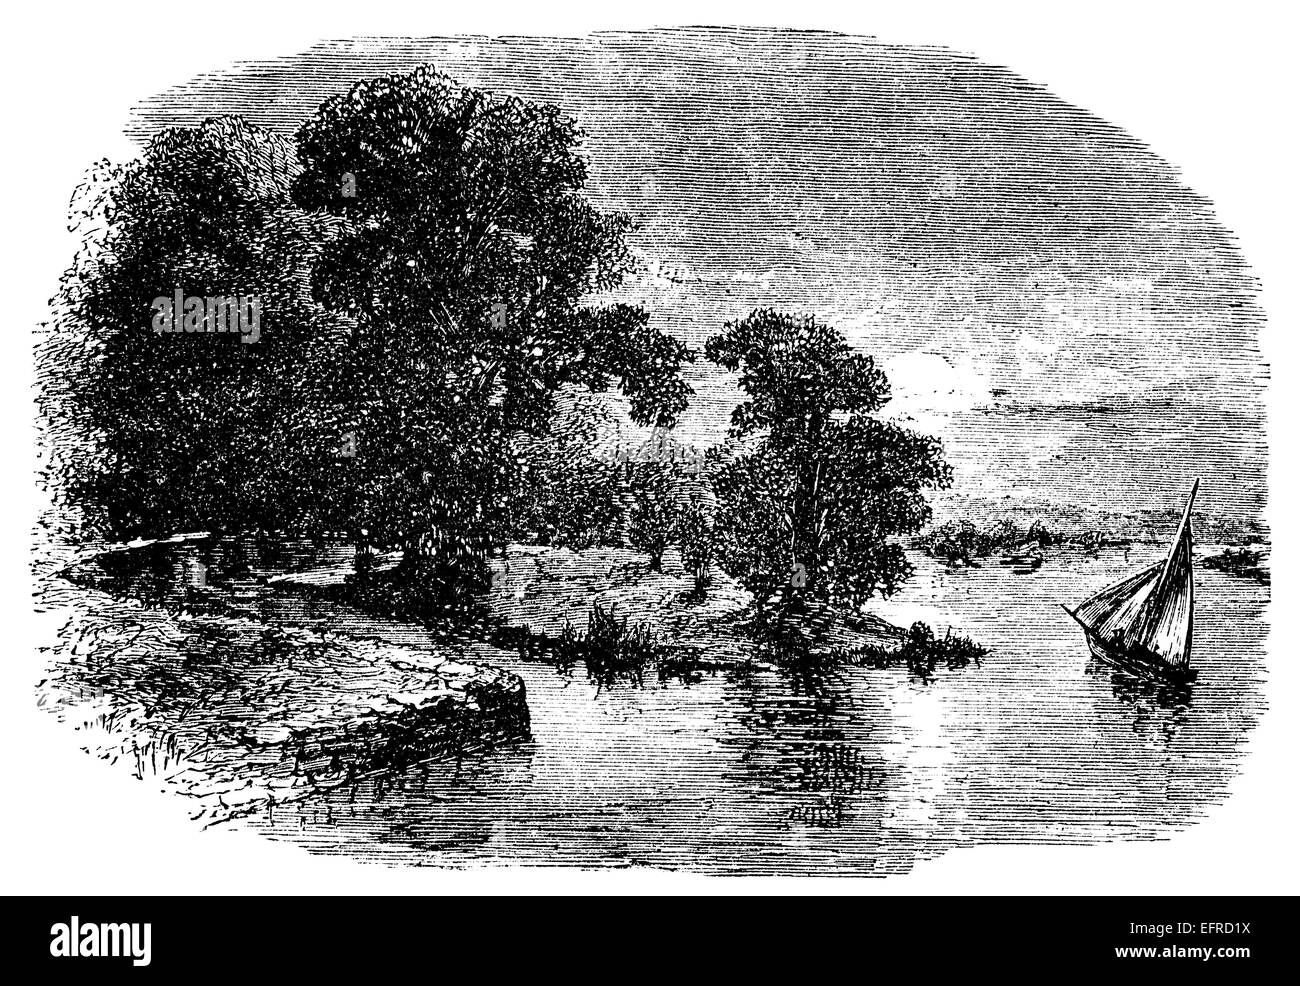 La rivière Cherwell, UK, photographié à partir de la 'English Photos tirées avec stylo et crayon" publié à Londres ca. 1870. Banque D'Images